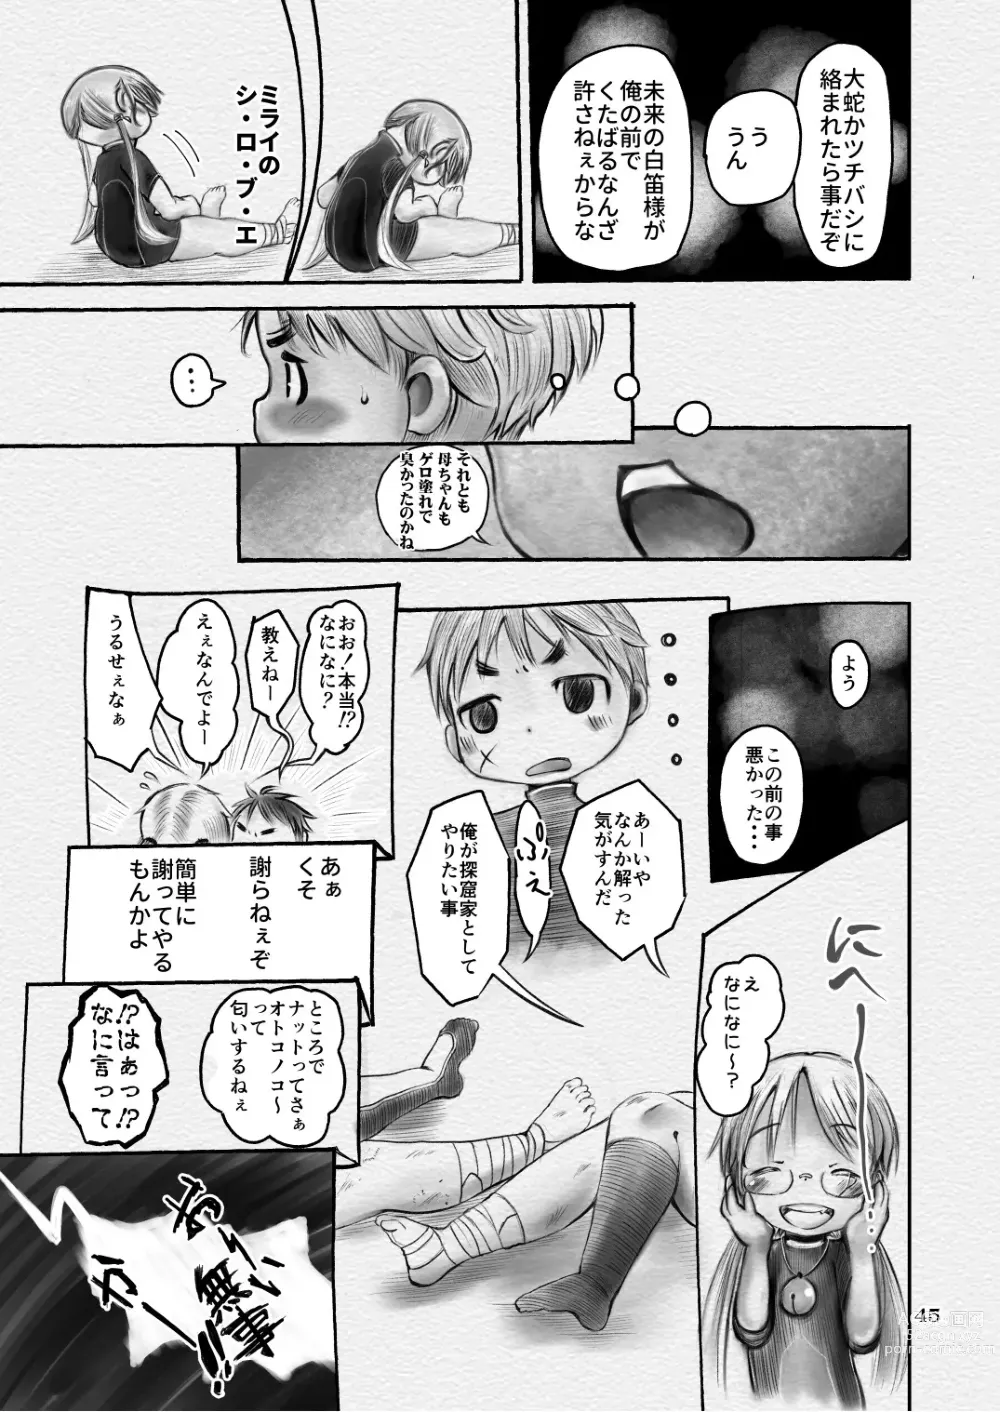 Page 45 of doujinshi Sakubun